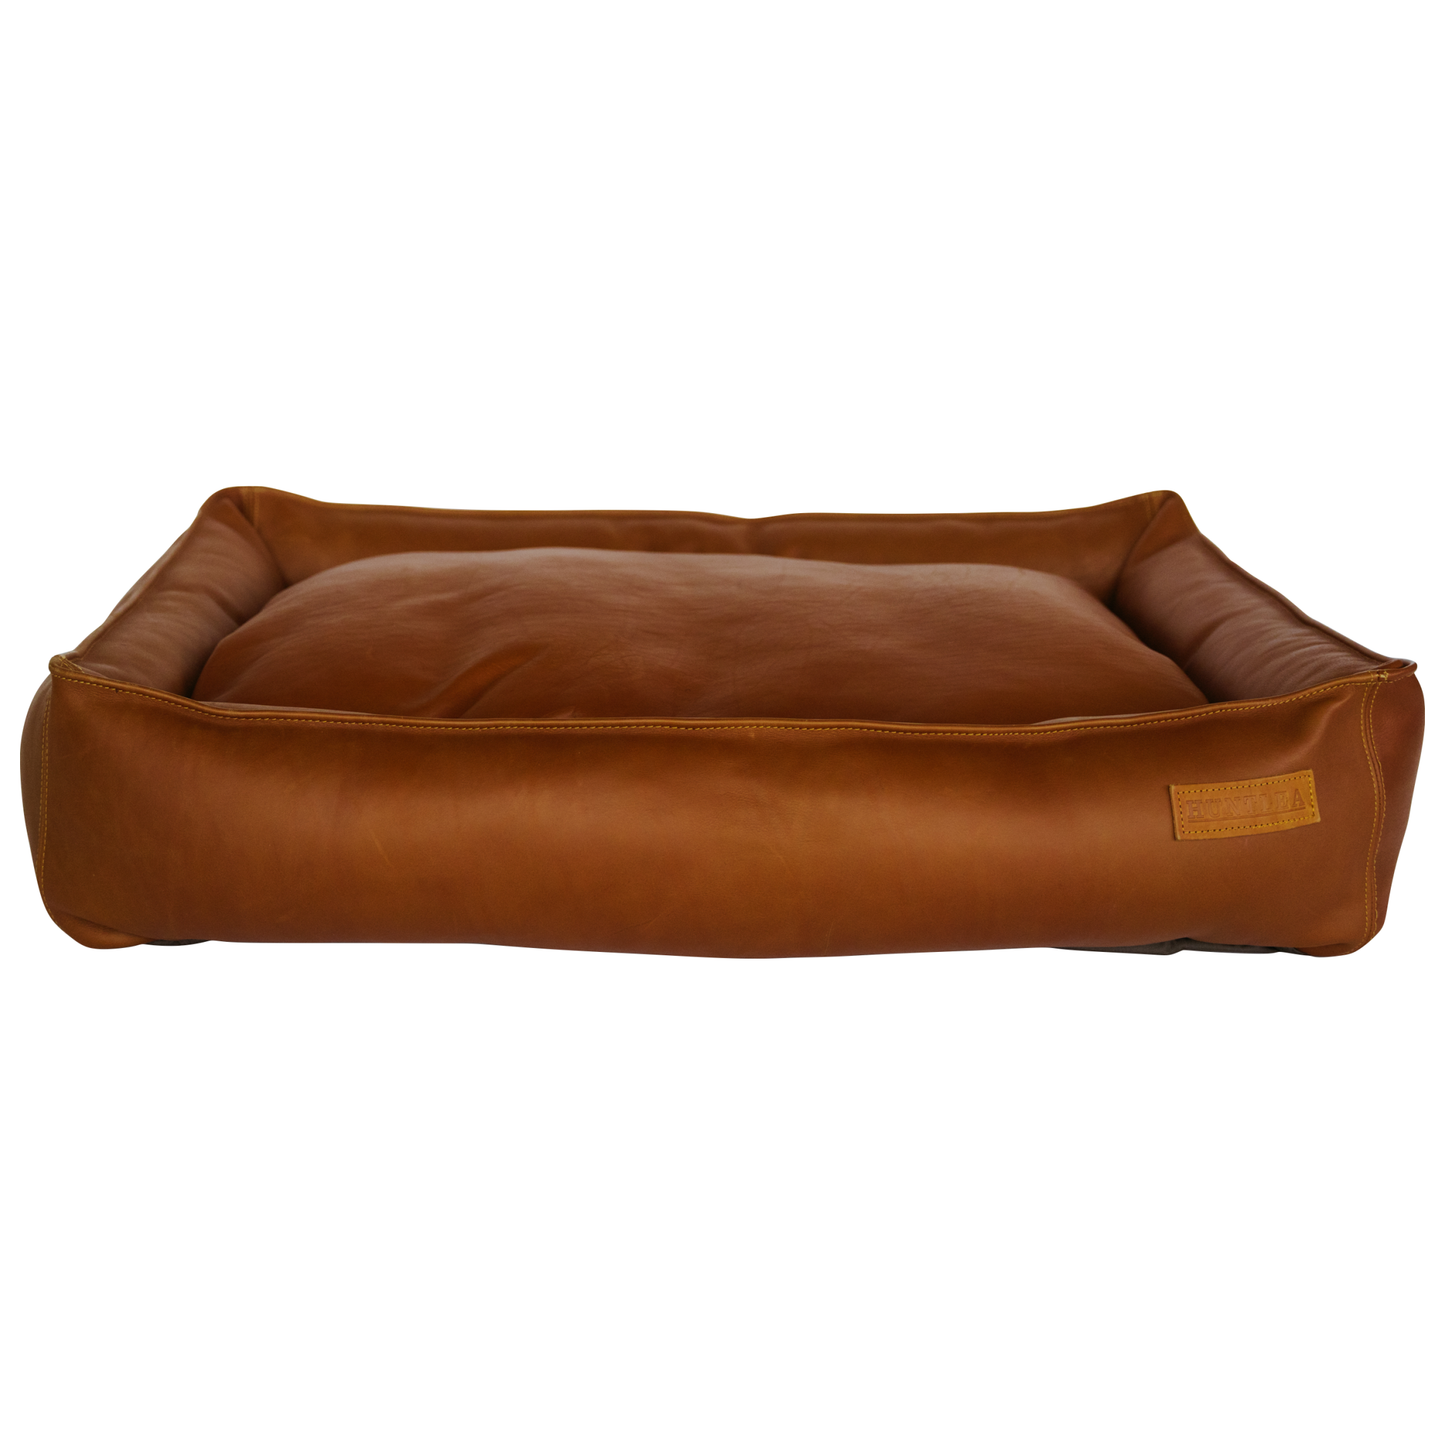 Huntlea Leather Slumber Dog Bed